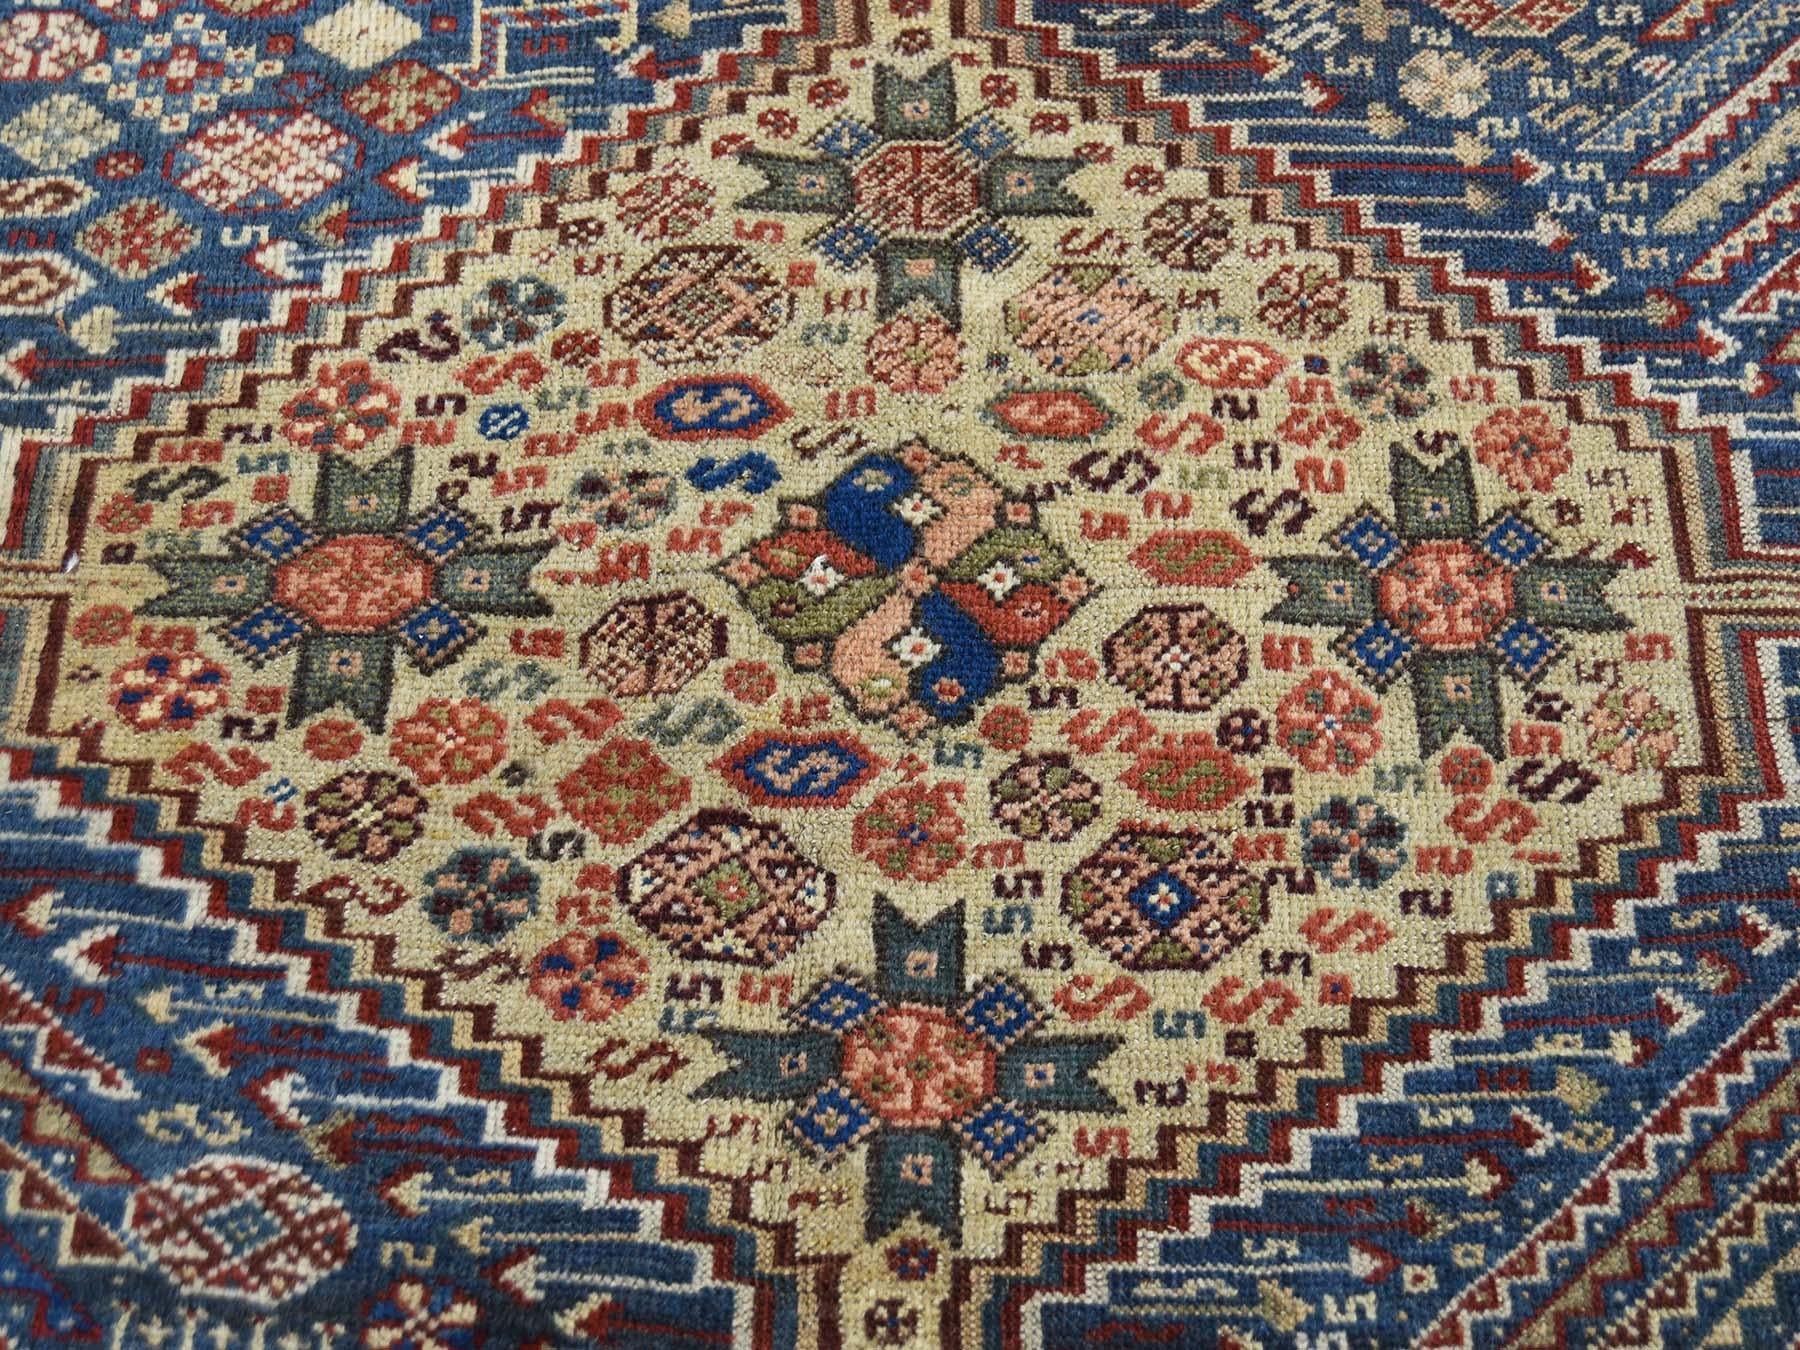 1900 Antique Persian Qashqai Rug, Exquisite Blue 2